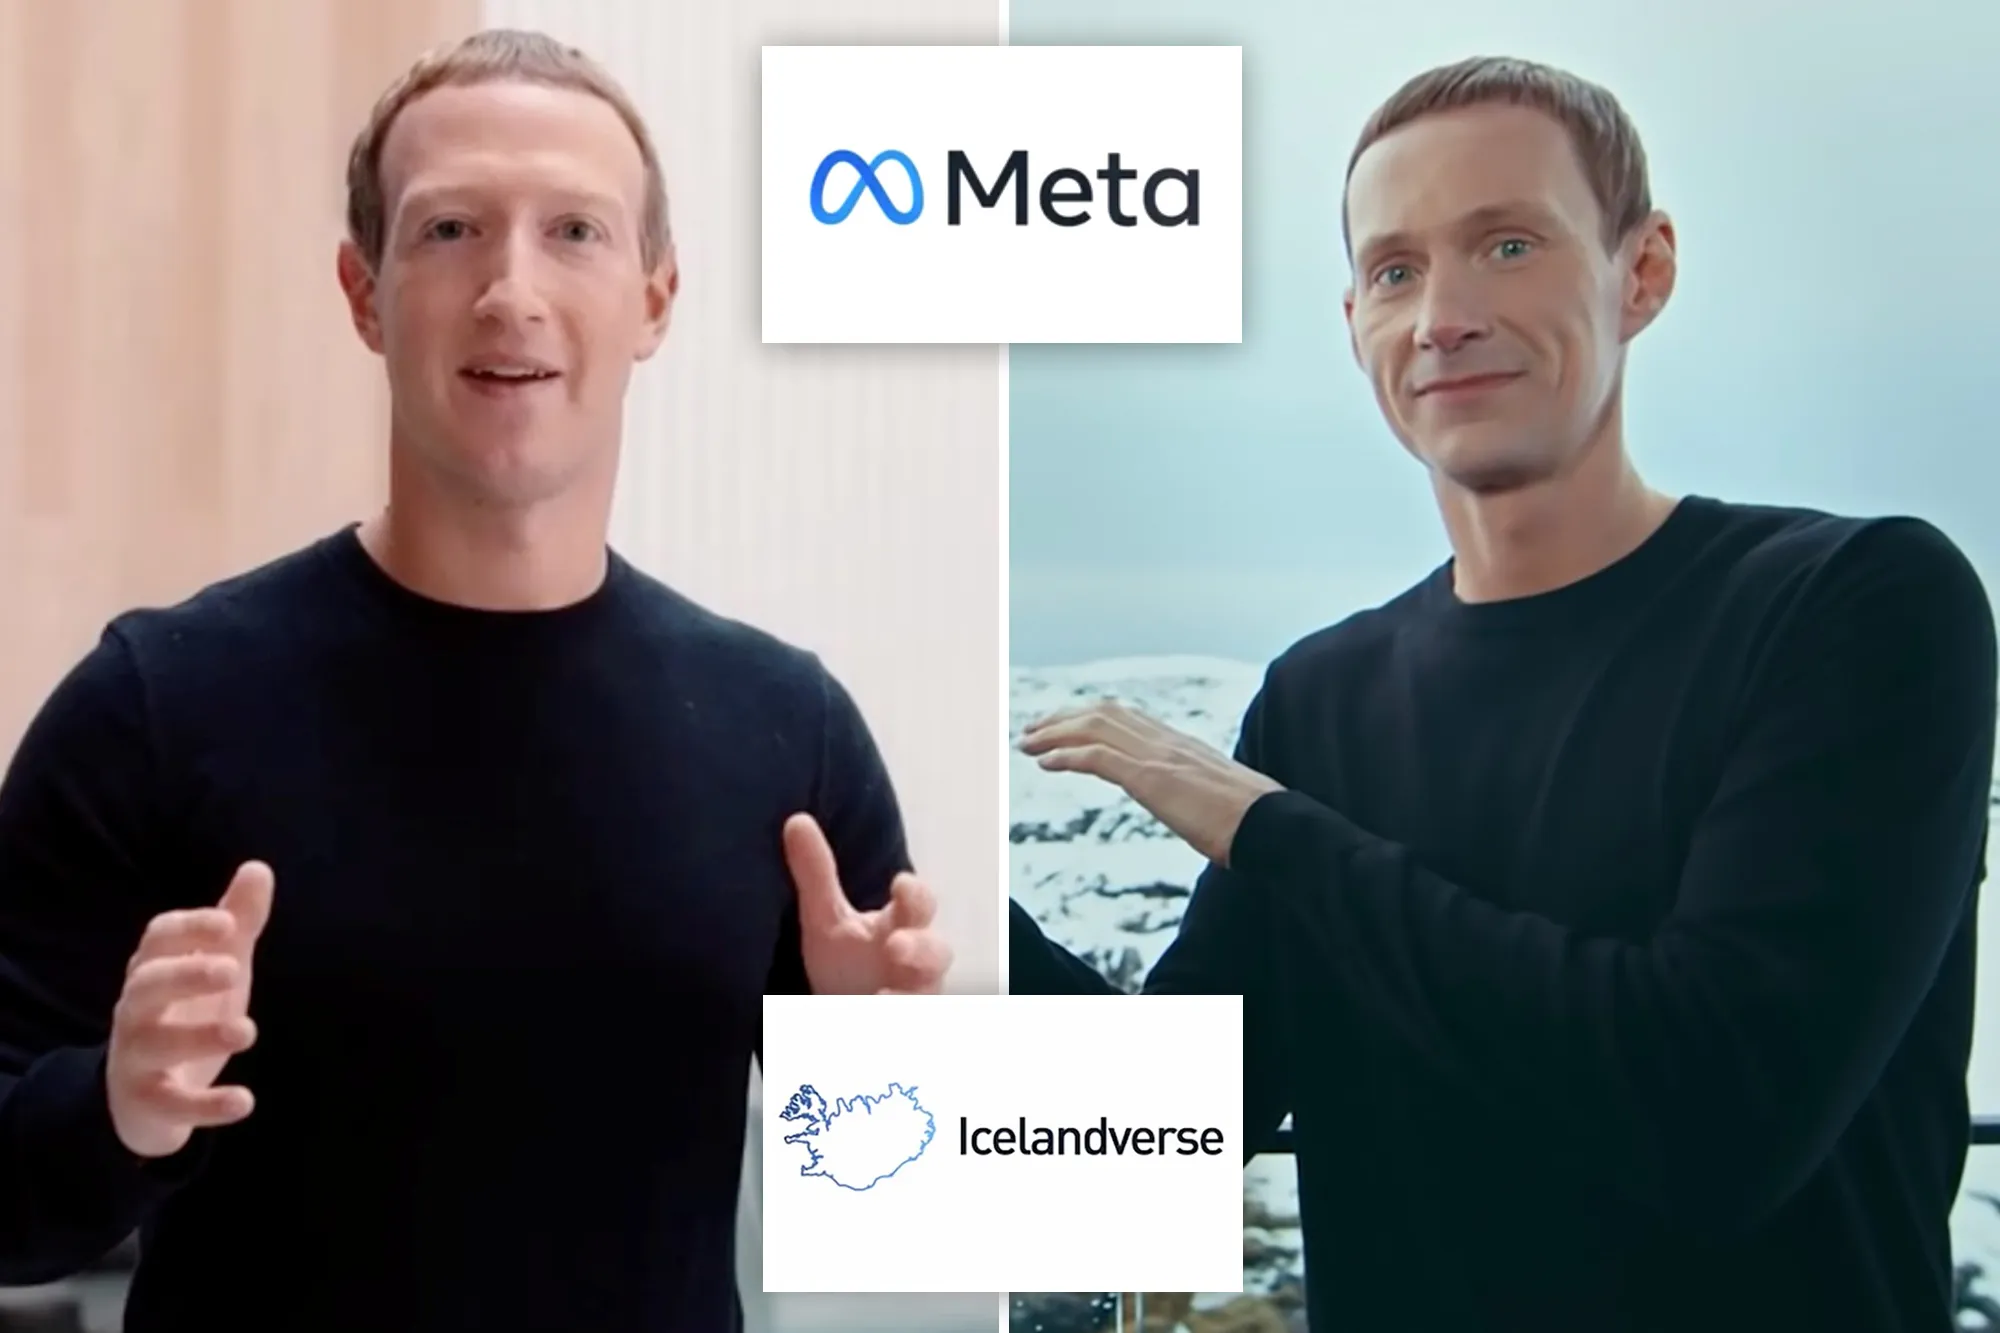 İzlanda, Zuckerberg'den ilham alan bir tanıtım videosu yayınladı